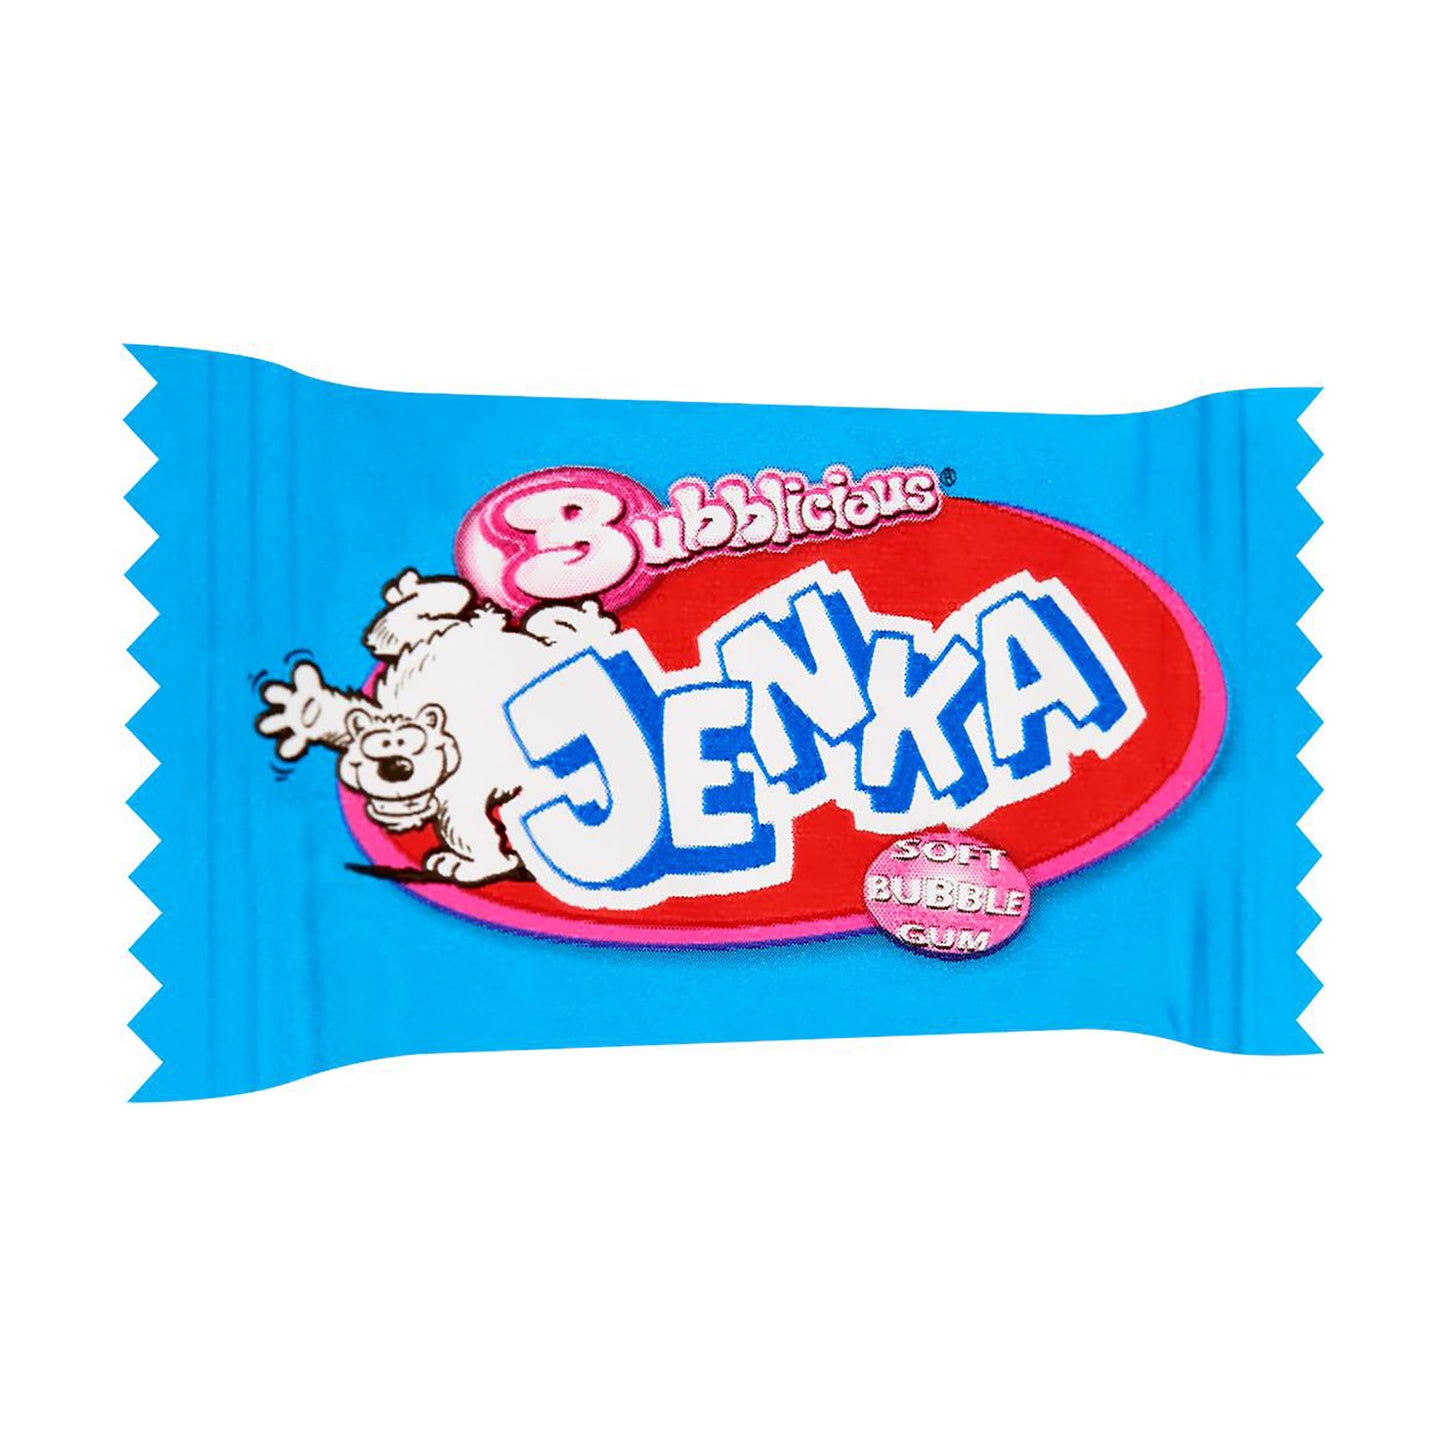 JENKA Chewing-gum BUBBLICIOUS 10x5g net